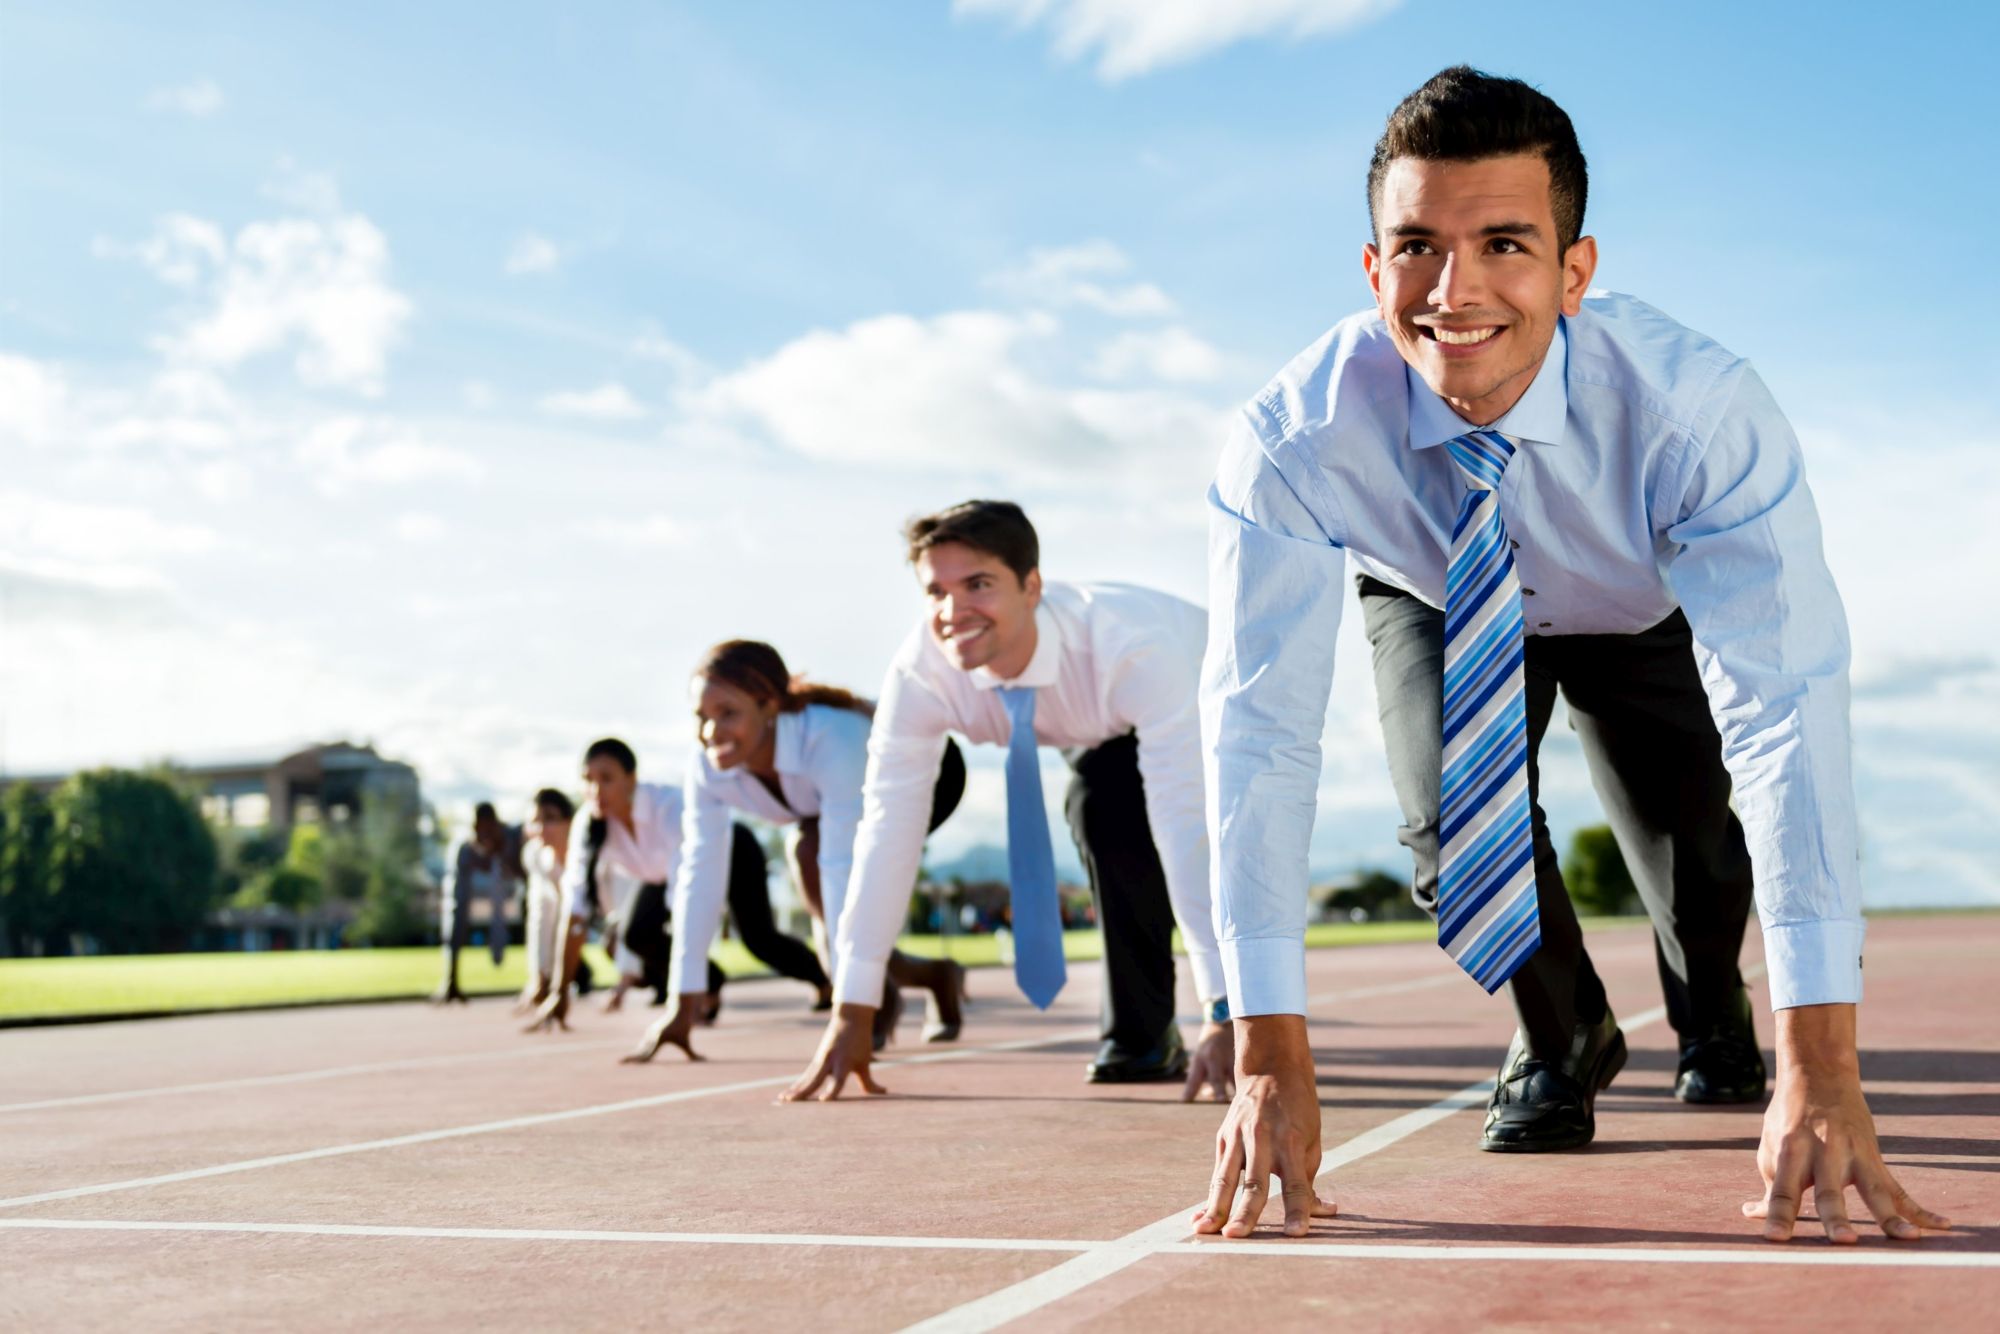 Бег как корпоративный спорт: в чем преимущества для работодателей и сотрудников